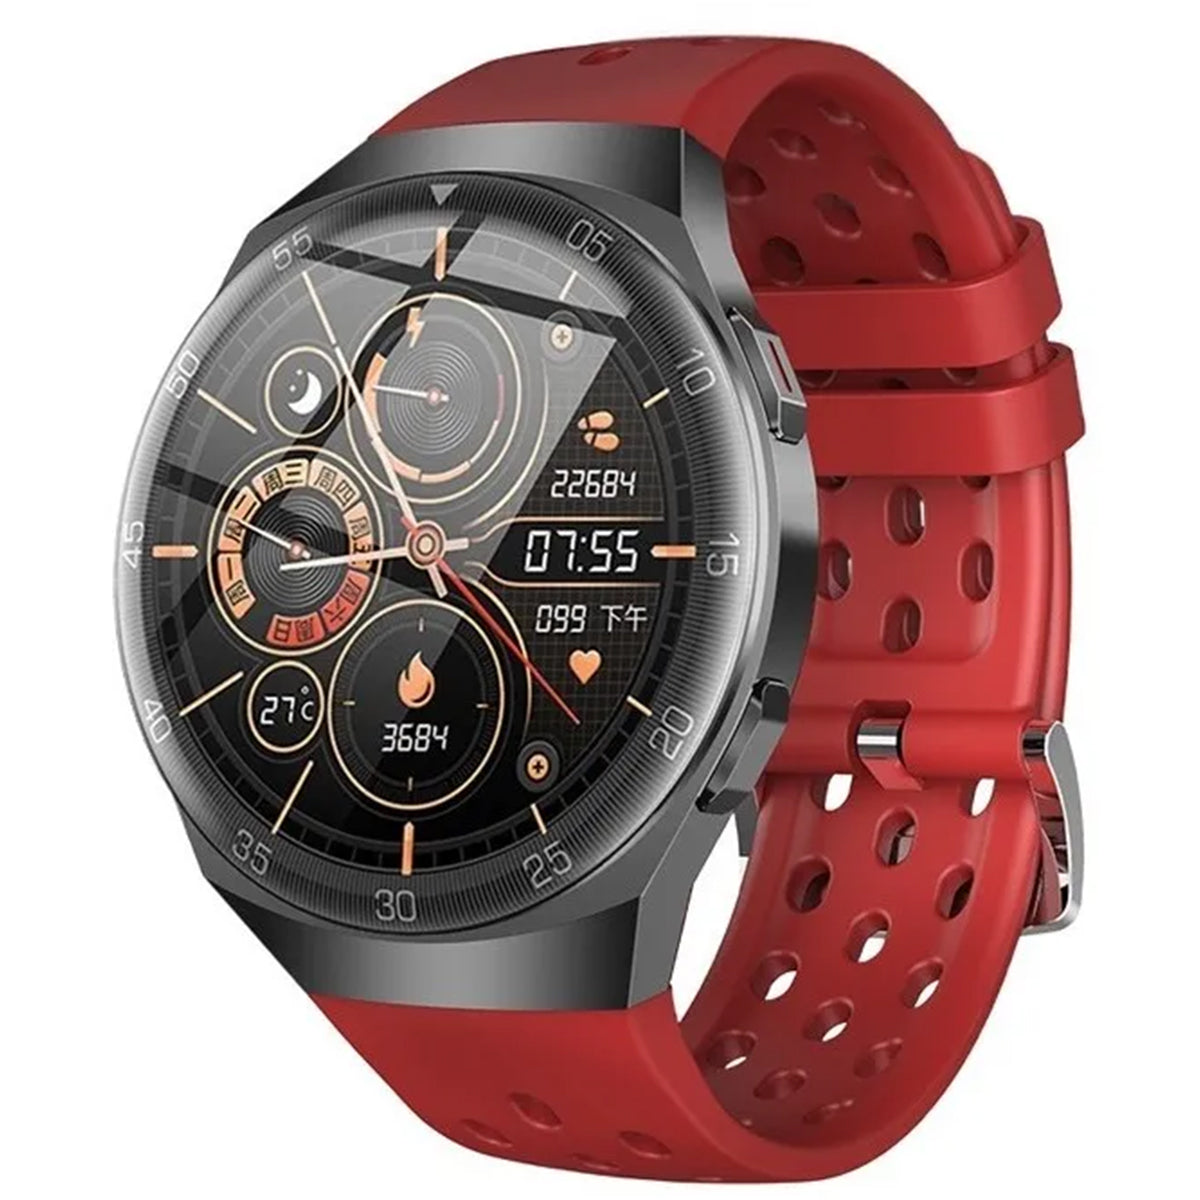 Smartwatch Reloj Inteligente Fralugio Bw0272 De Lujo Touch